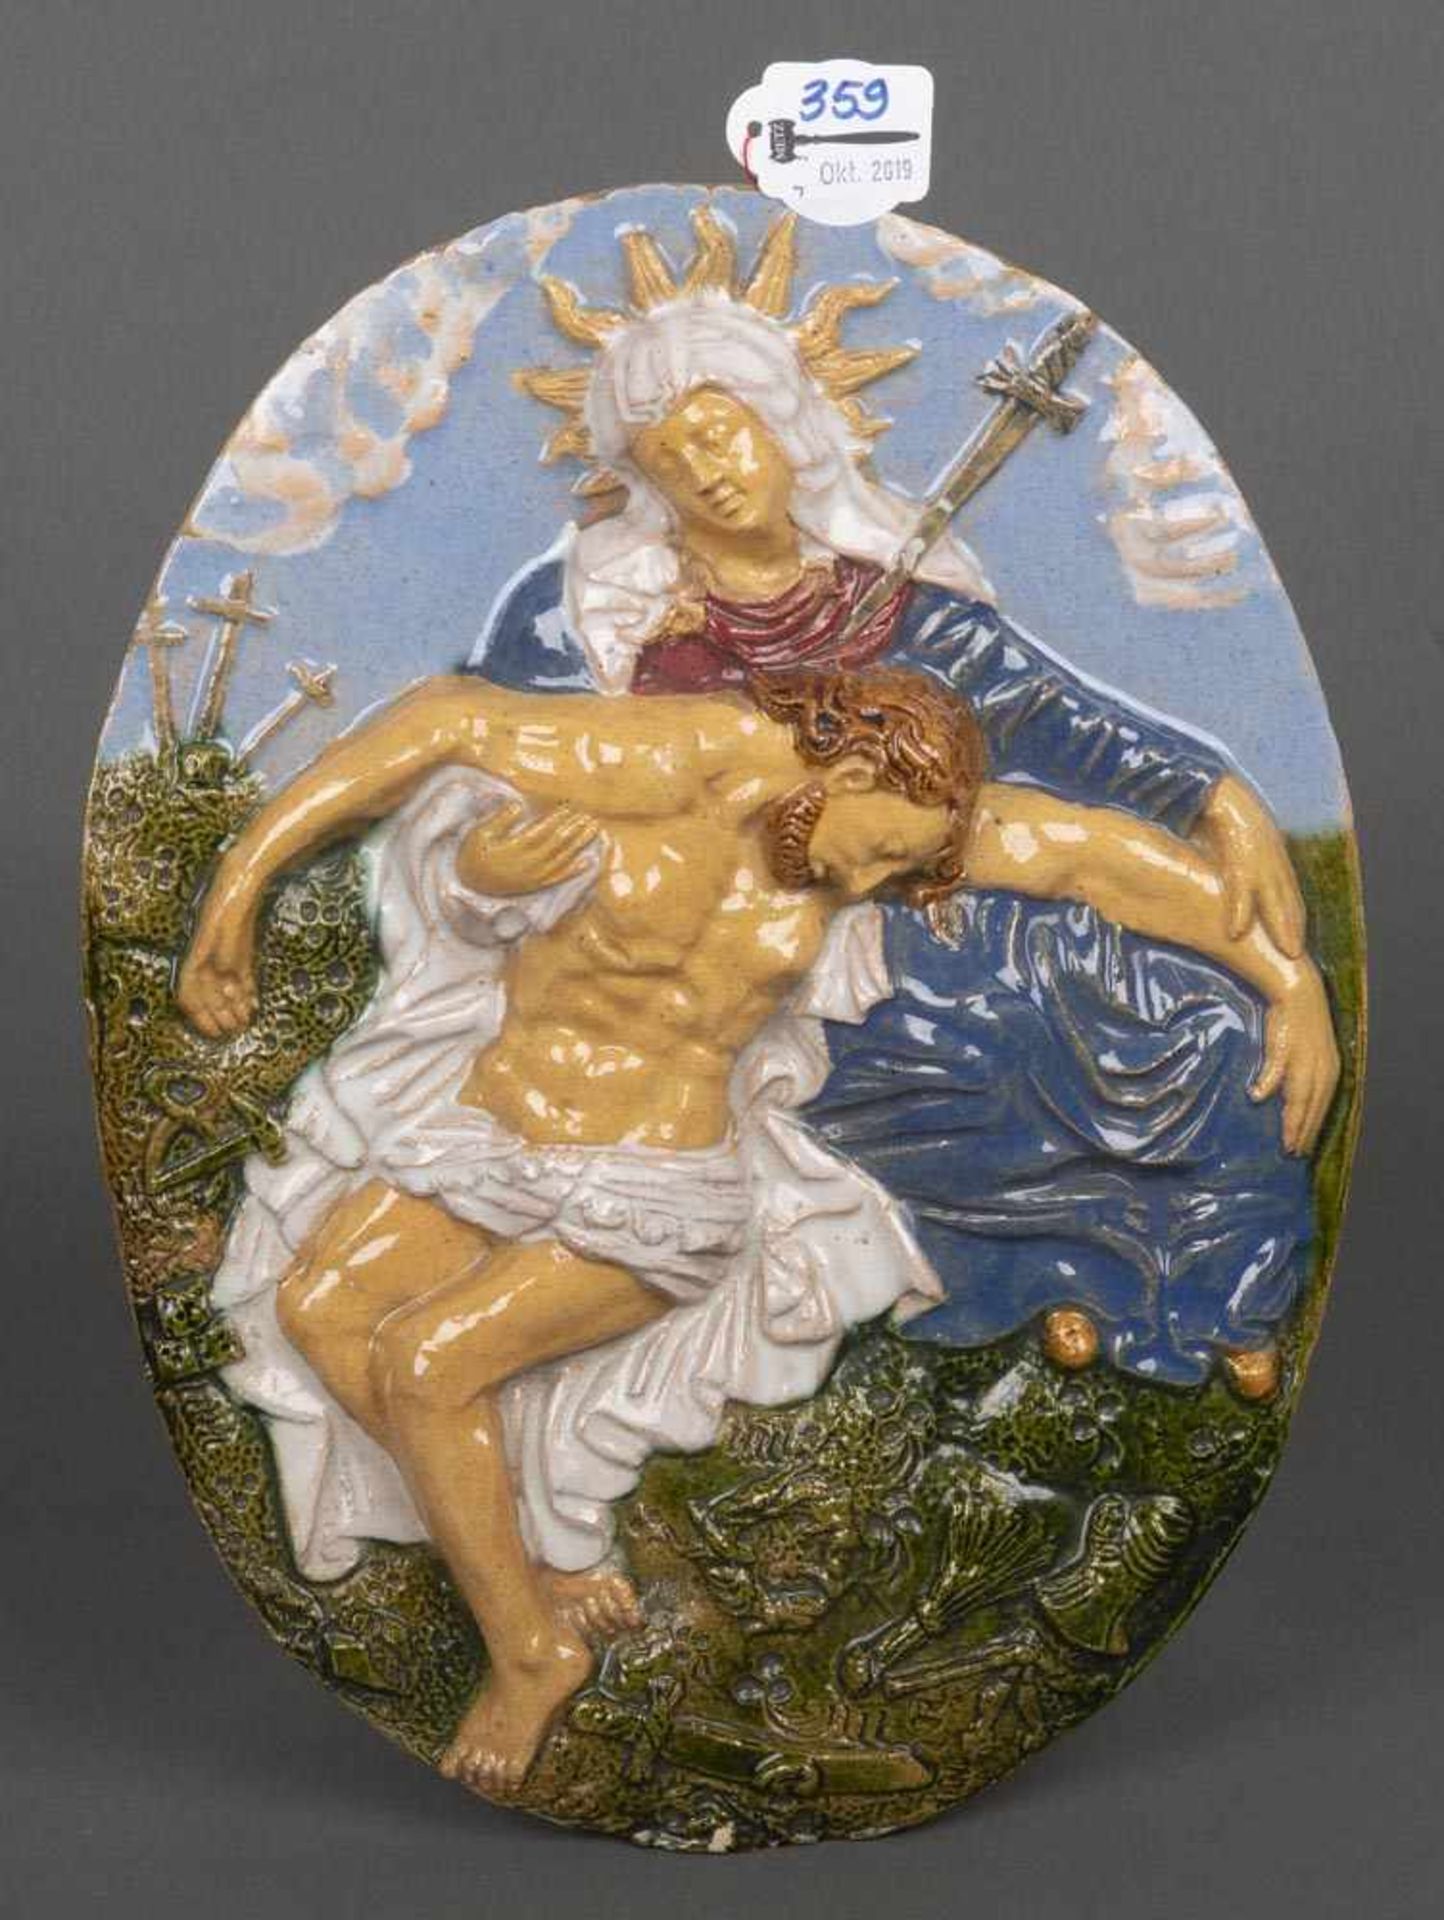 Plakette mit der Mater Dolorosa. Spanien 19. Jh. Terrakotta, bunt glasiert, 32 x 24,5 cm.- - -25.